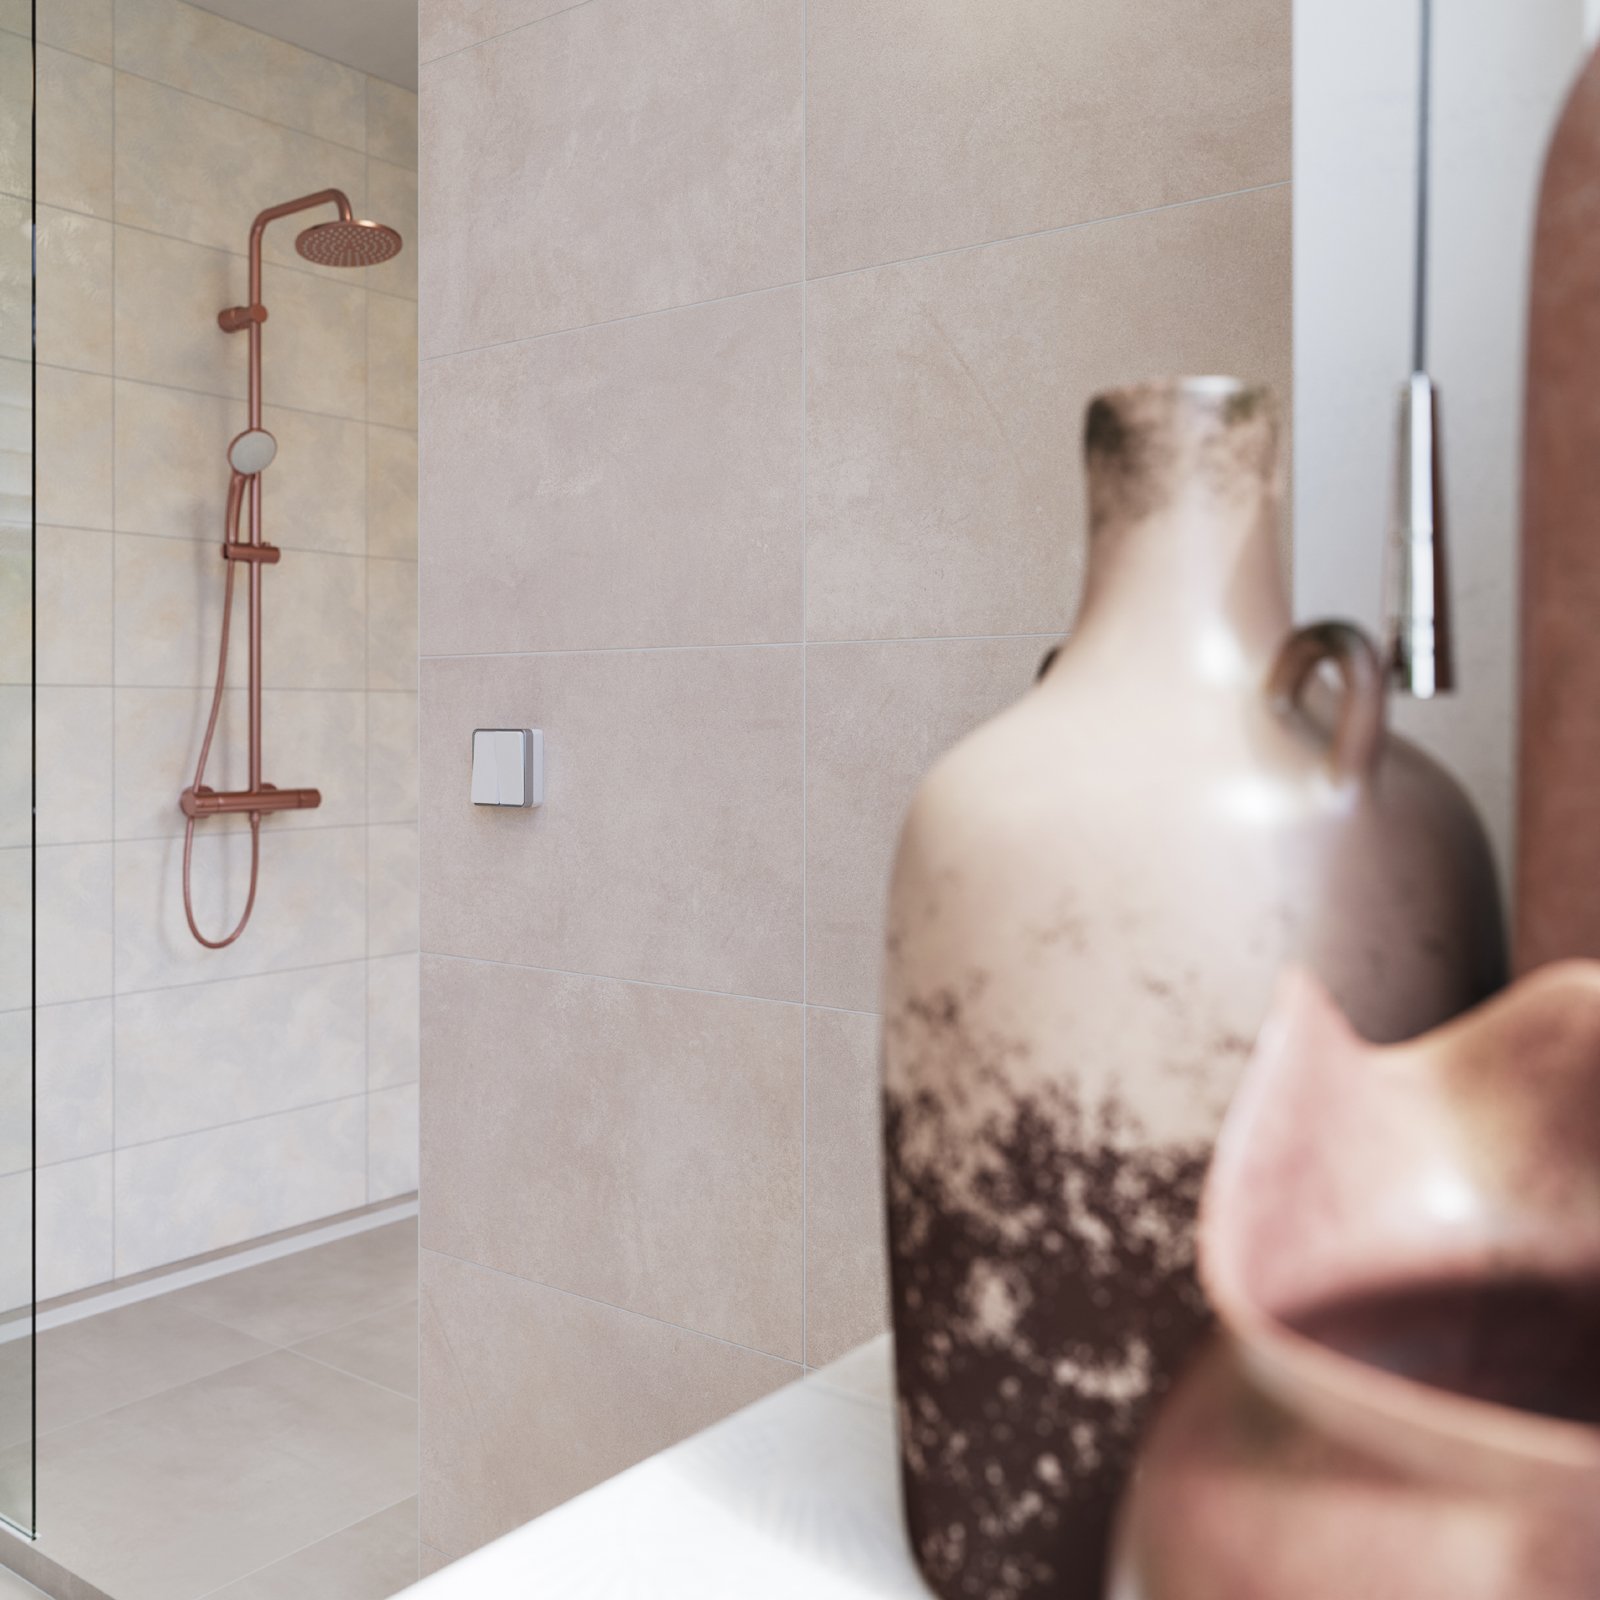 #RAKO #Lampea #Obklady a dlažby #Koupelna #beton #Moderní styl #Matný obklad #Velký formát #350 - 500 Kč/m2 #500 - 700 Kč/m2 #new #šedá 